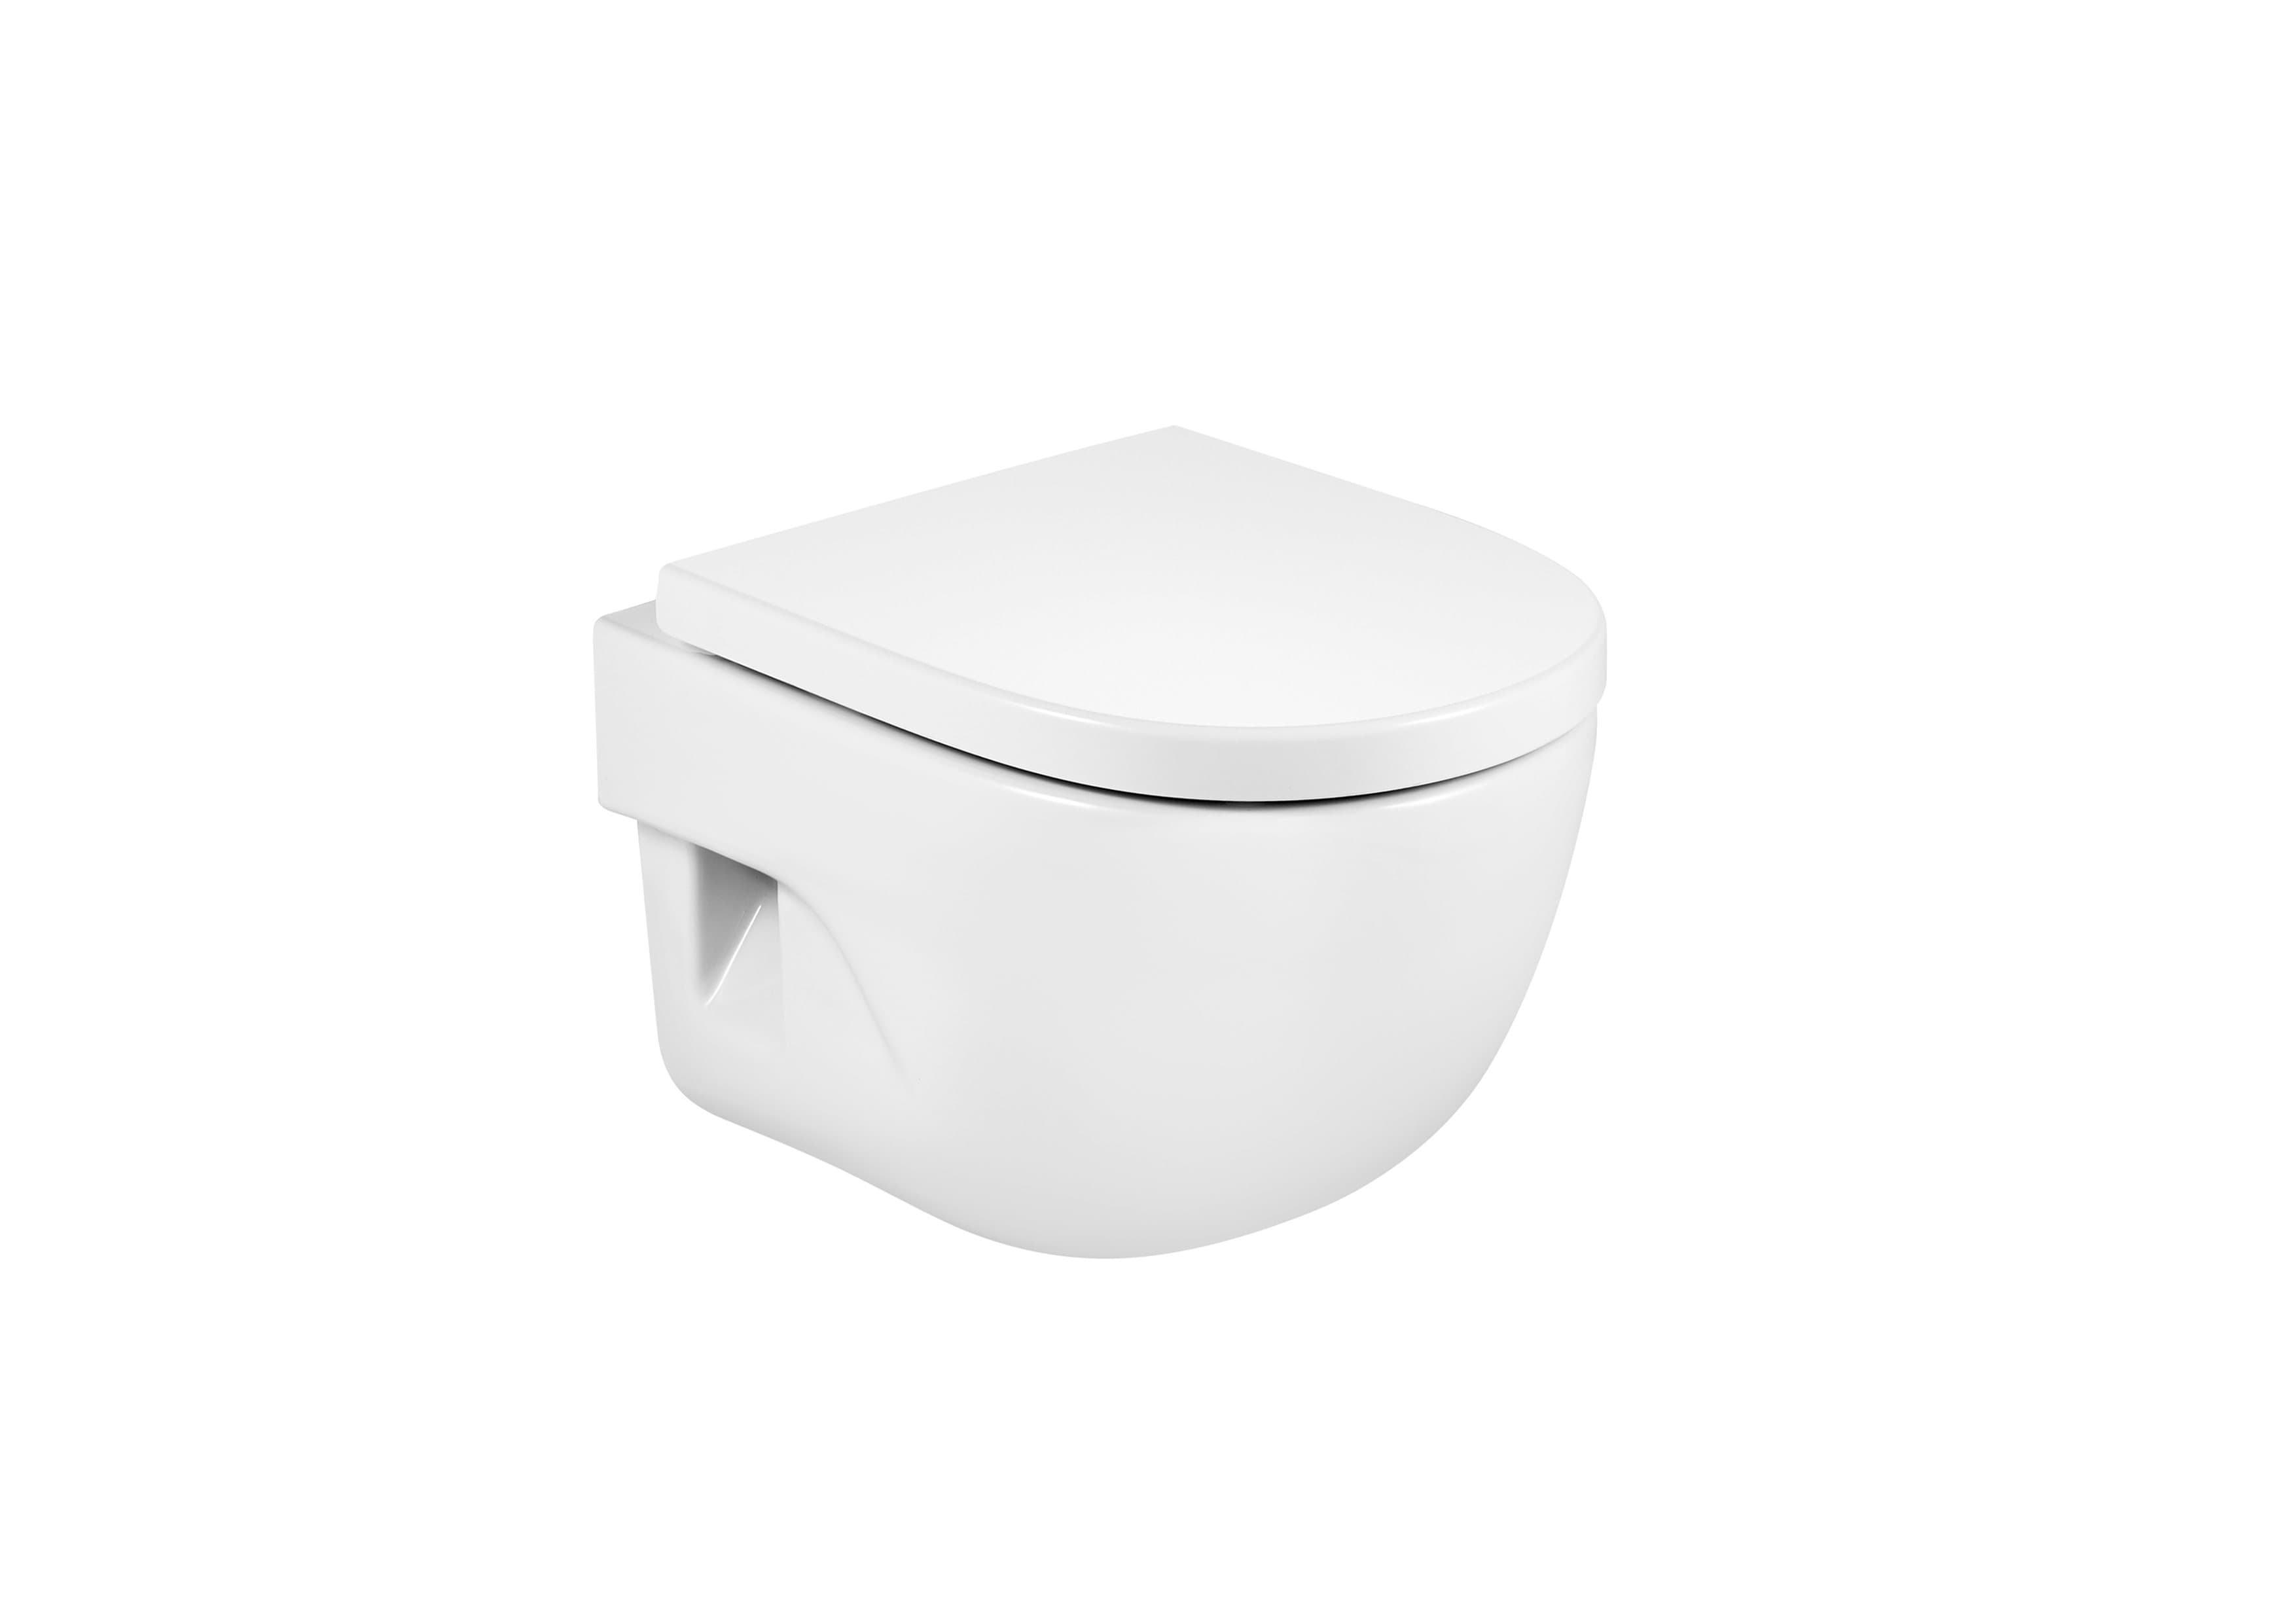 Sanitaire WC MERIDIAN A346248000 Cuvette de WC suspendue compacte en porcelaine bride fermée Roca 1 - Mirage ceramica